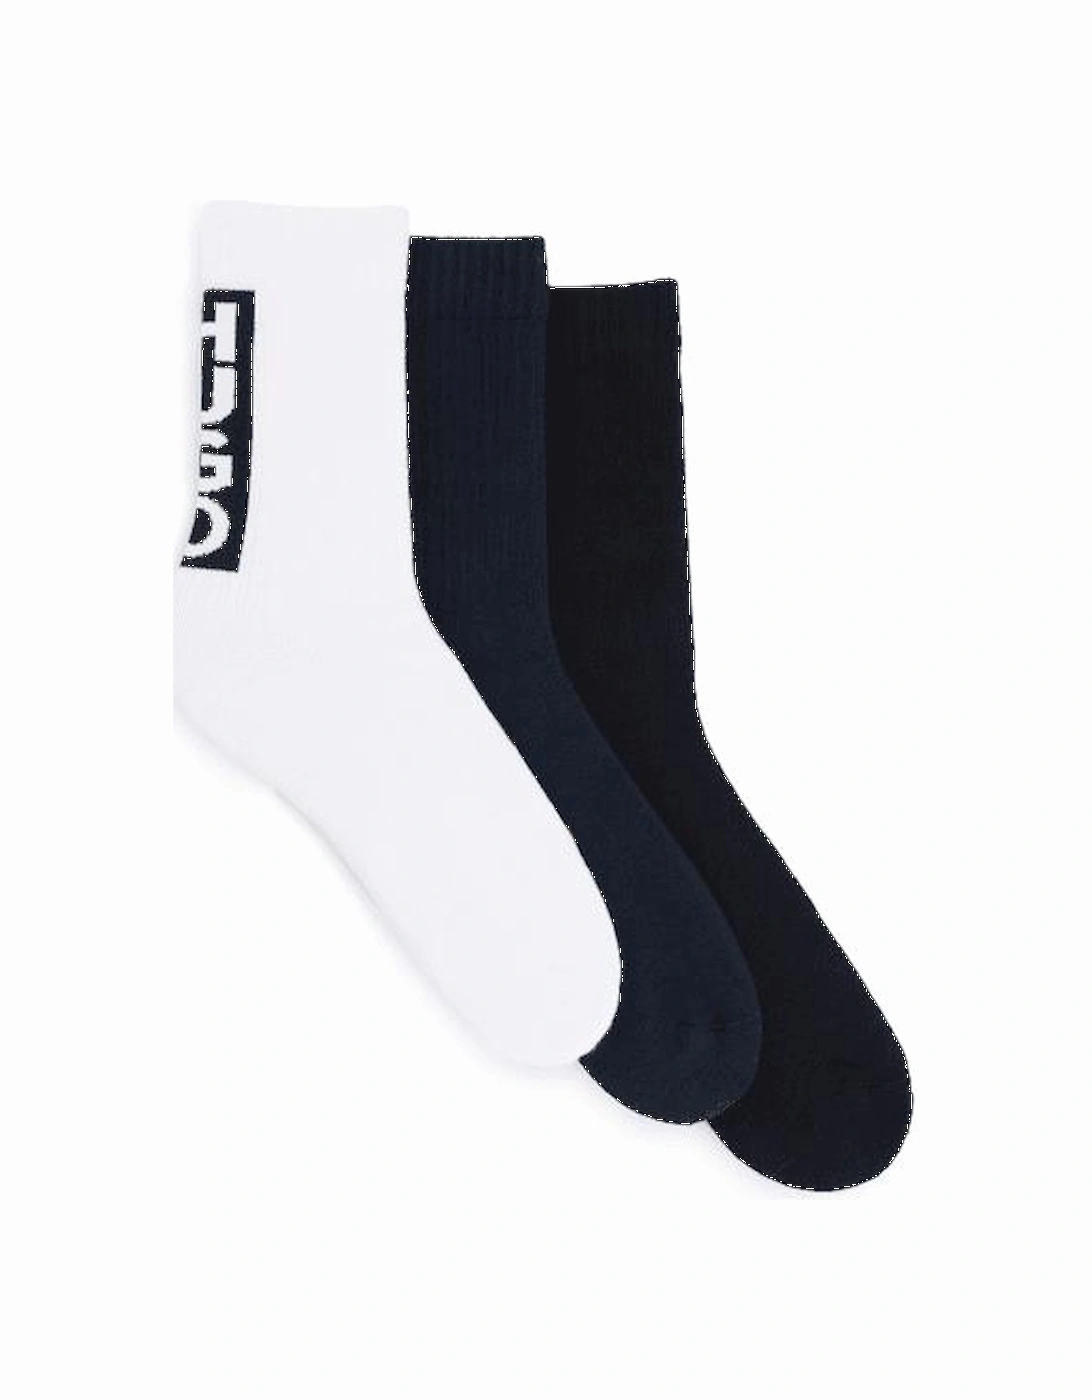 3-Pack Block Logo Sports Socks, Black/White/Navy